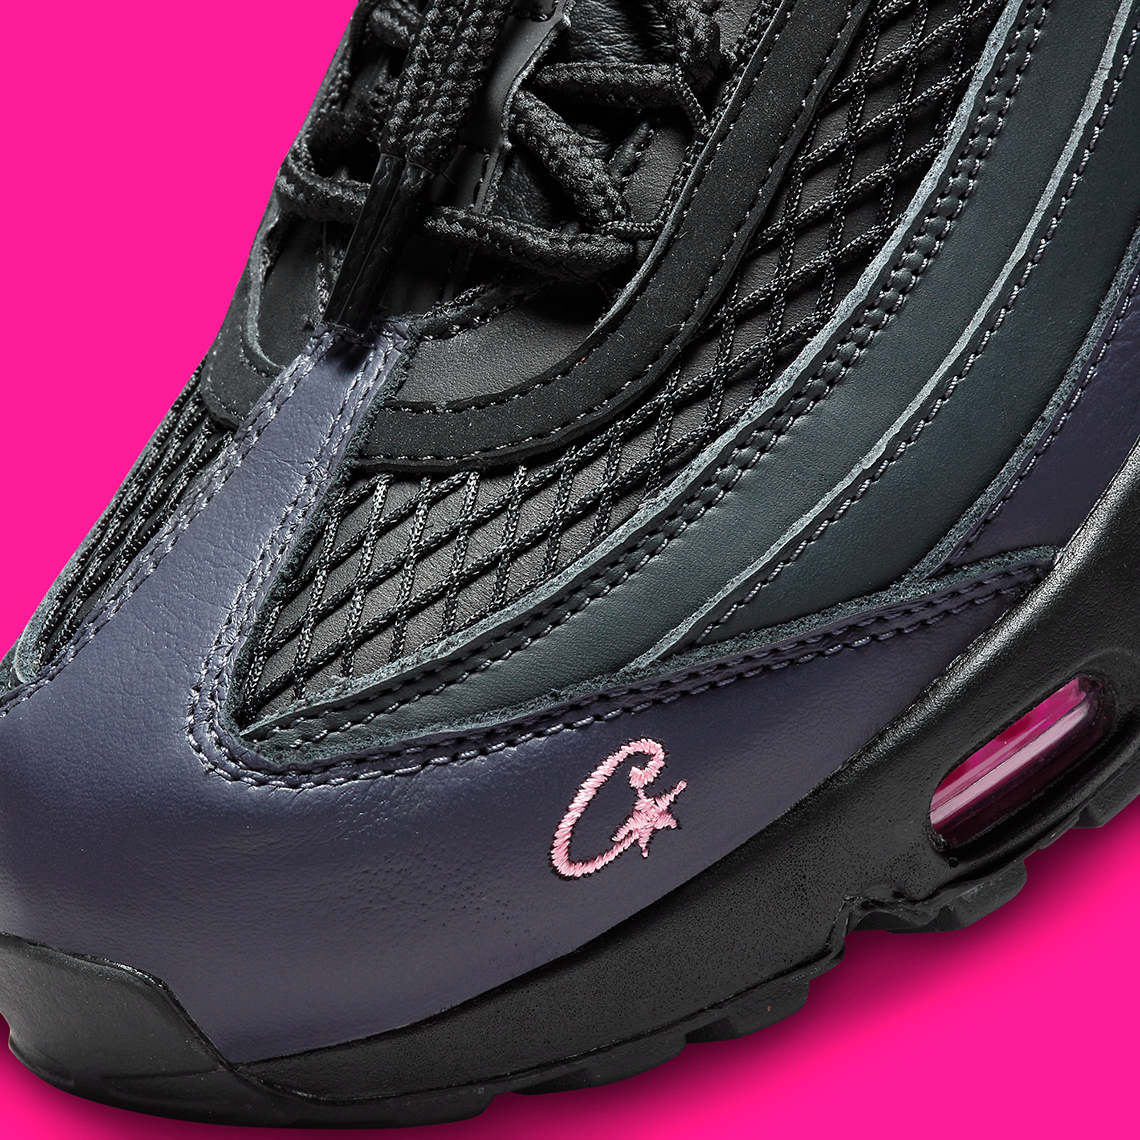 Corteiz Nike Lunettes De Soleil Teintées Maverick 95 Black Pink Camo Fb2709 001 2